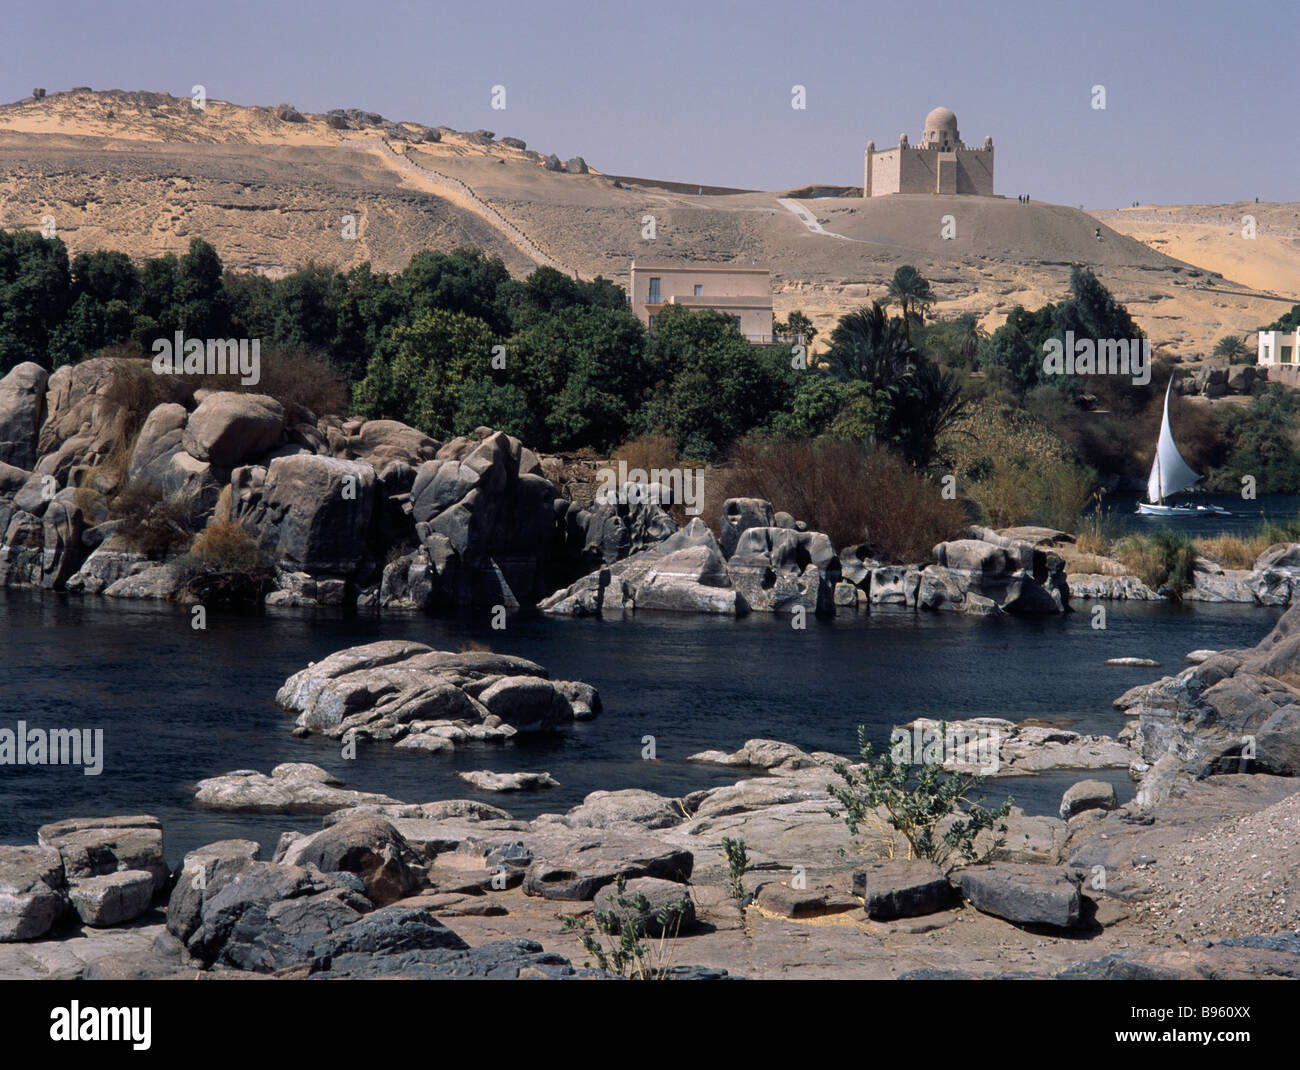 Égypte, vallée du Nil, Assouan. Felouque sur le Nil au premier plan avec le mausolée de l'Aga Khan sur colline au-delà. Banque D'Images